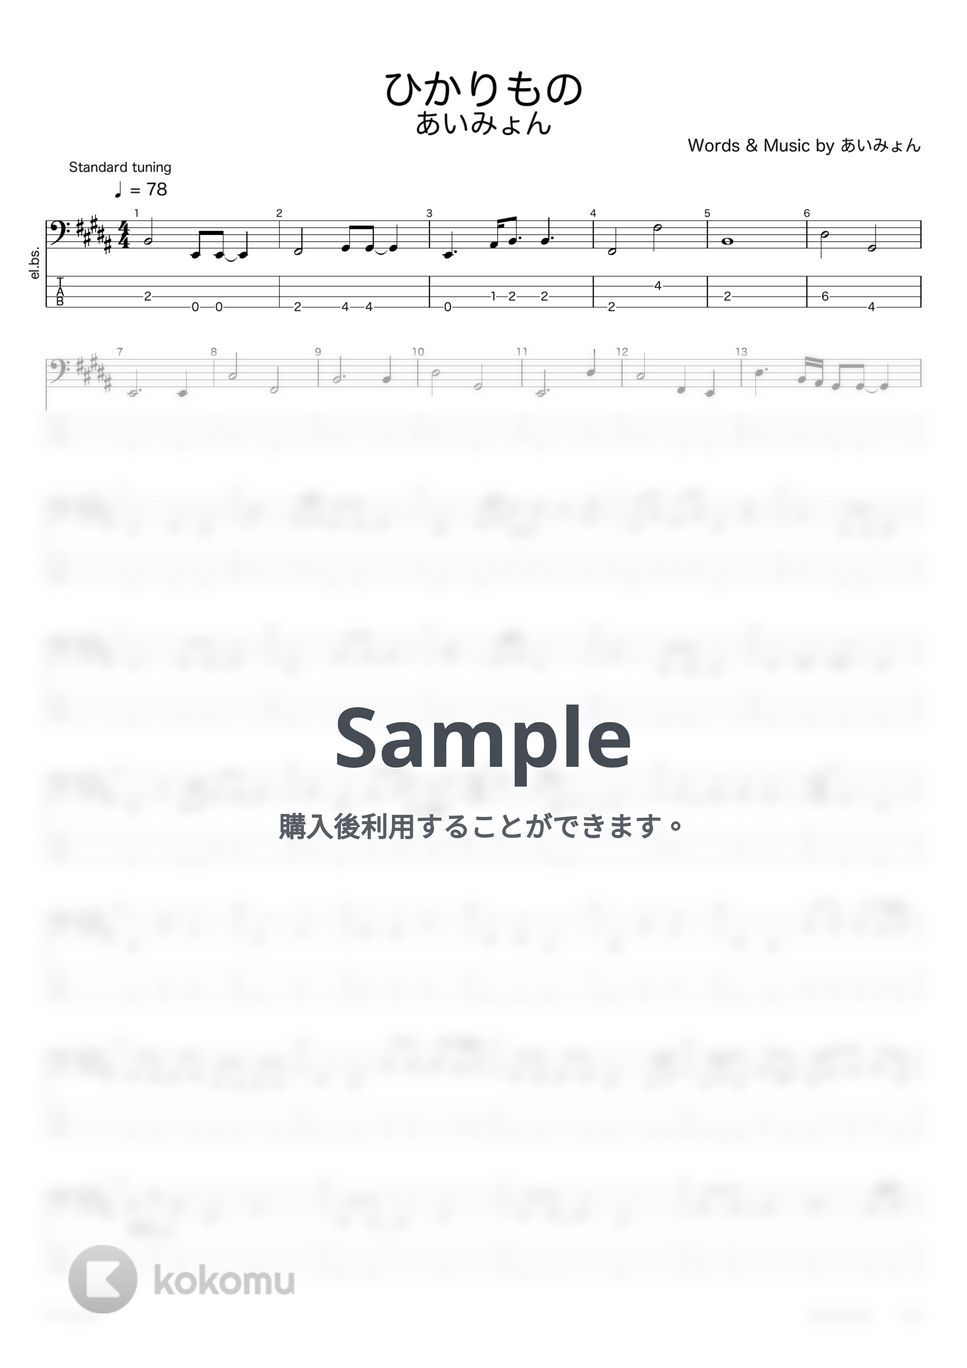 あいみょん - ひかりもの【ベースタブ譜】 by G's score